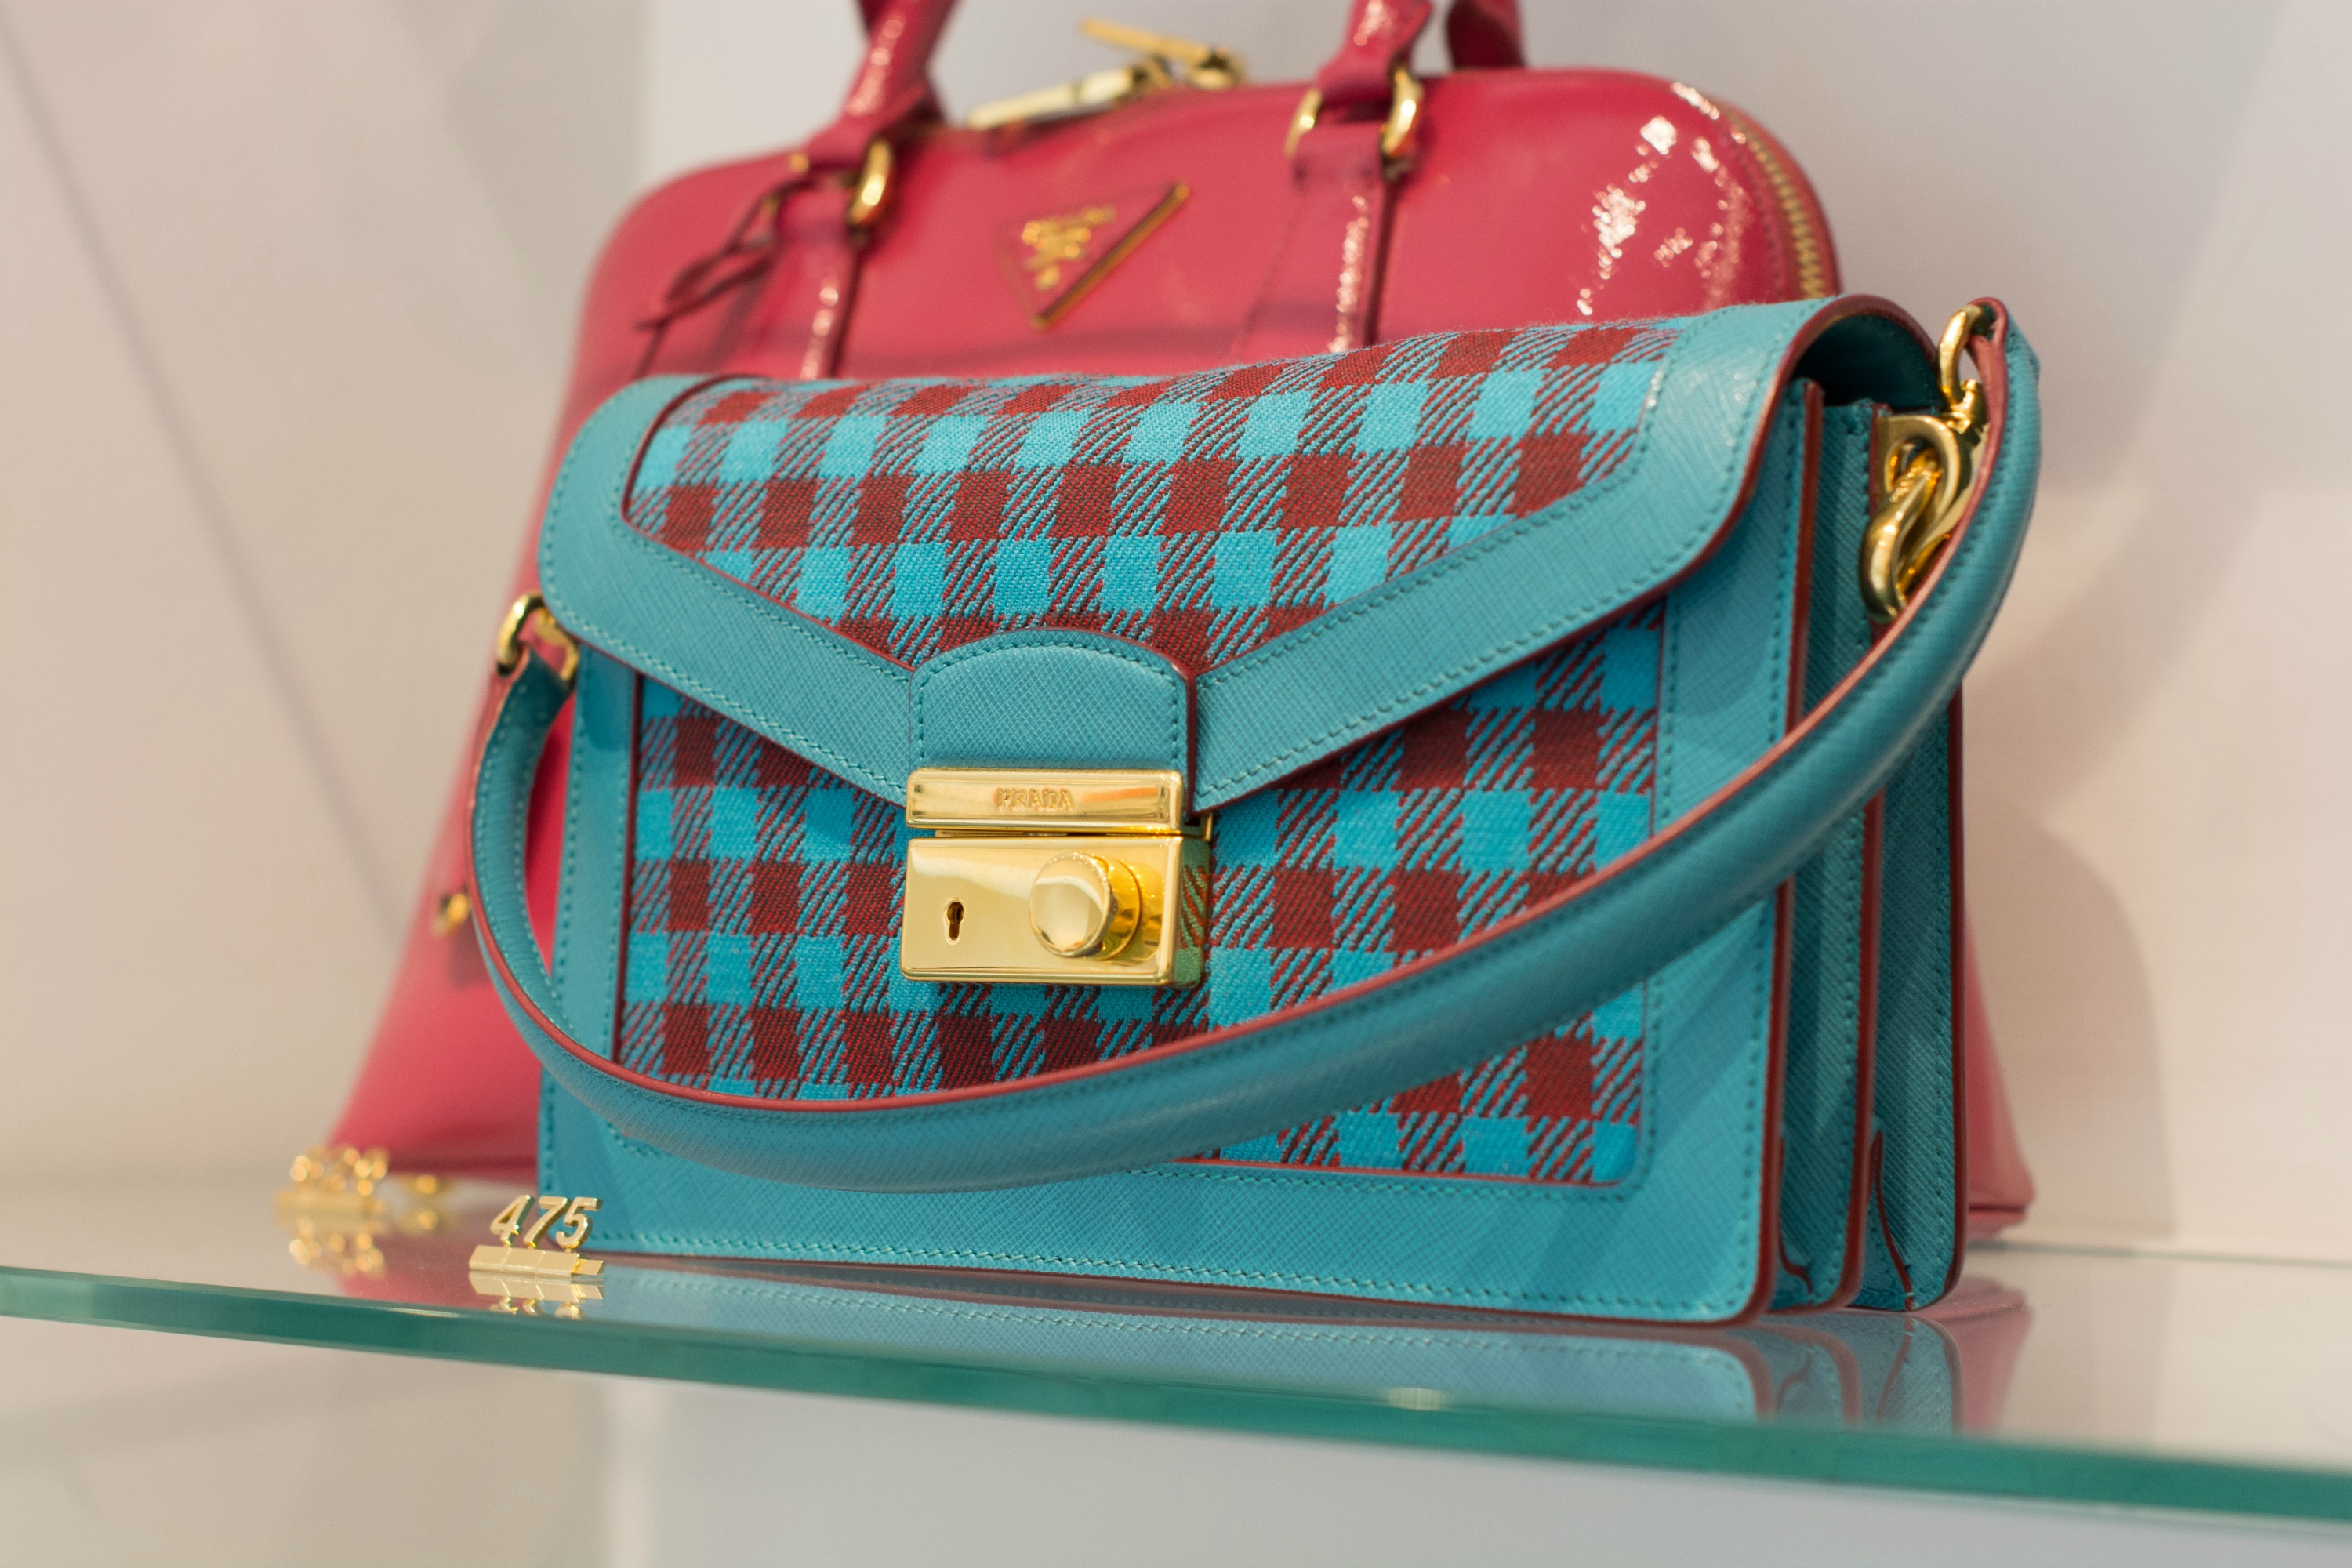 Pre-loved' luxury bag store Designer Exchange has designs on US